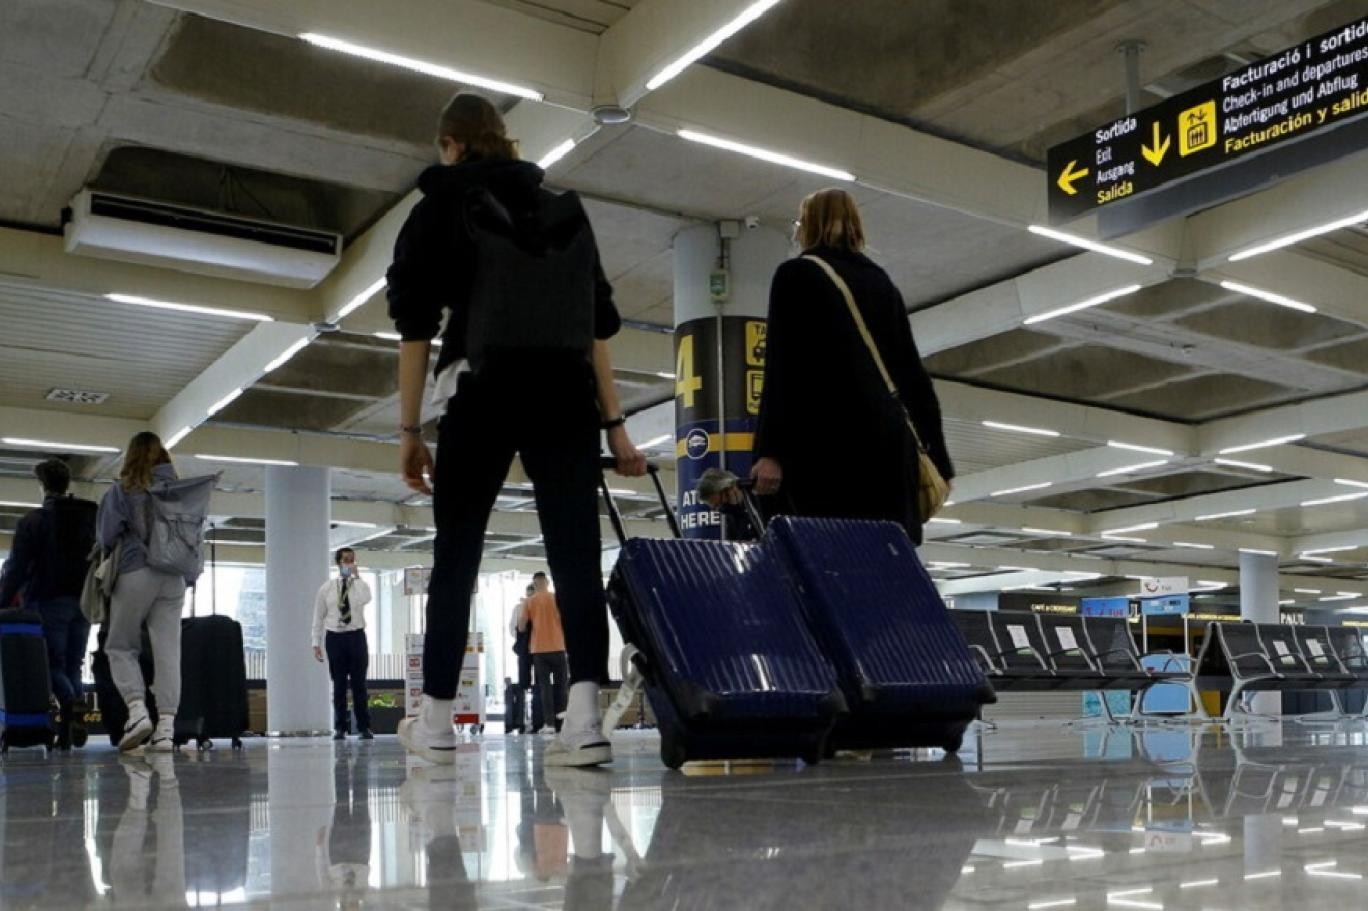 طالبو اللجوء اللبنانيون موجودون في منطقة بالمطار تُقدّم فيها الخدمات الأساسية.